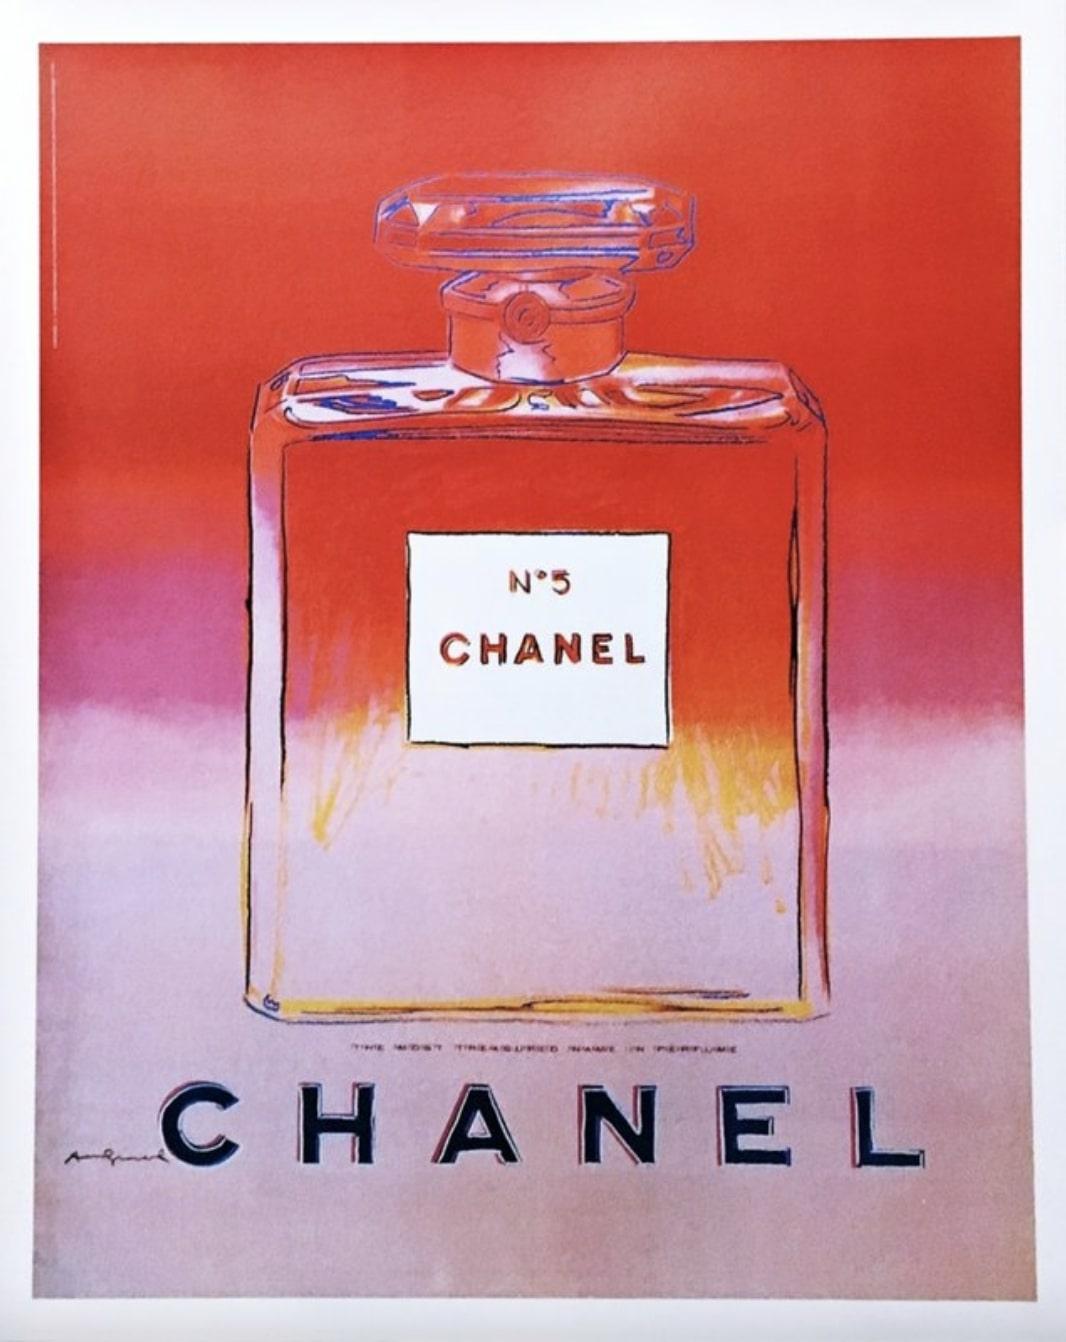 Andy Warhol a créé cette image pour Chanel dans les années 1980, mais ce n'est qu'en 1997 que Chanel a décidé de l'utiliser comme publicité dans ses campagnes de publicité. Ce format a été distribué dans les grands magasins aux clients de Chanel qui